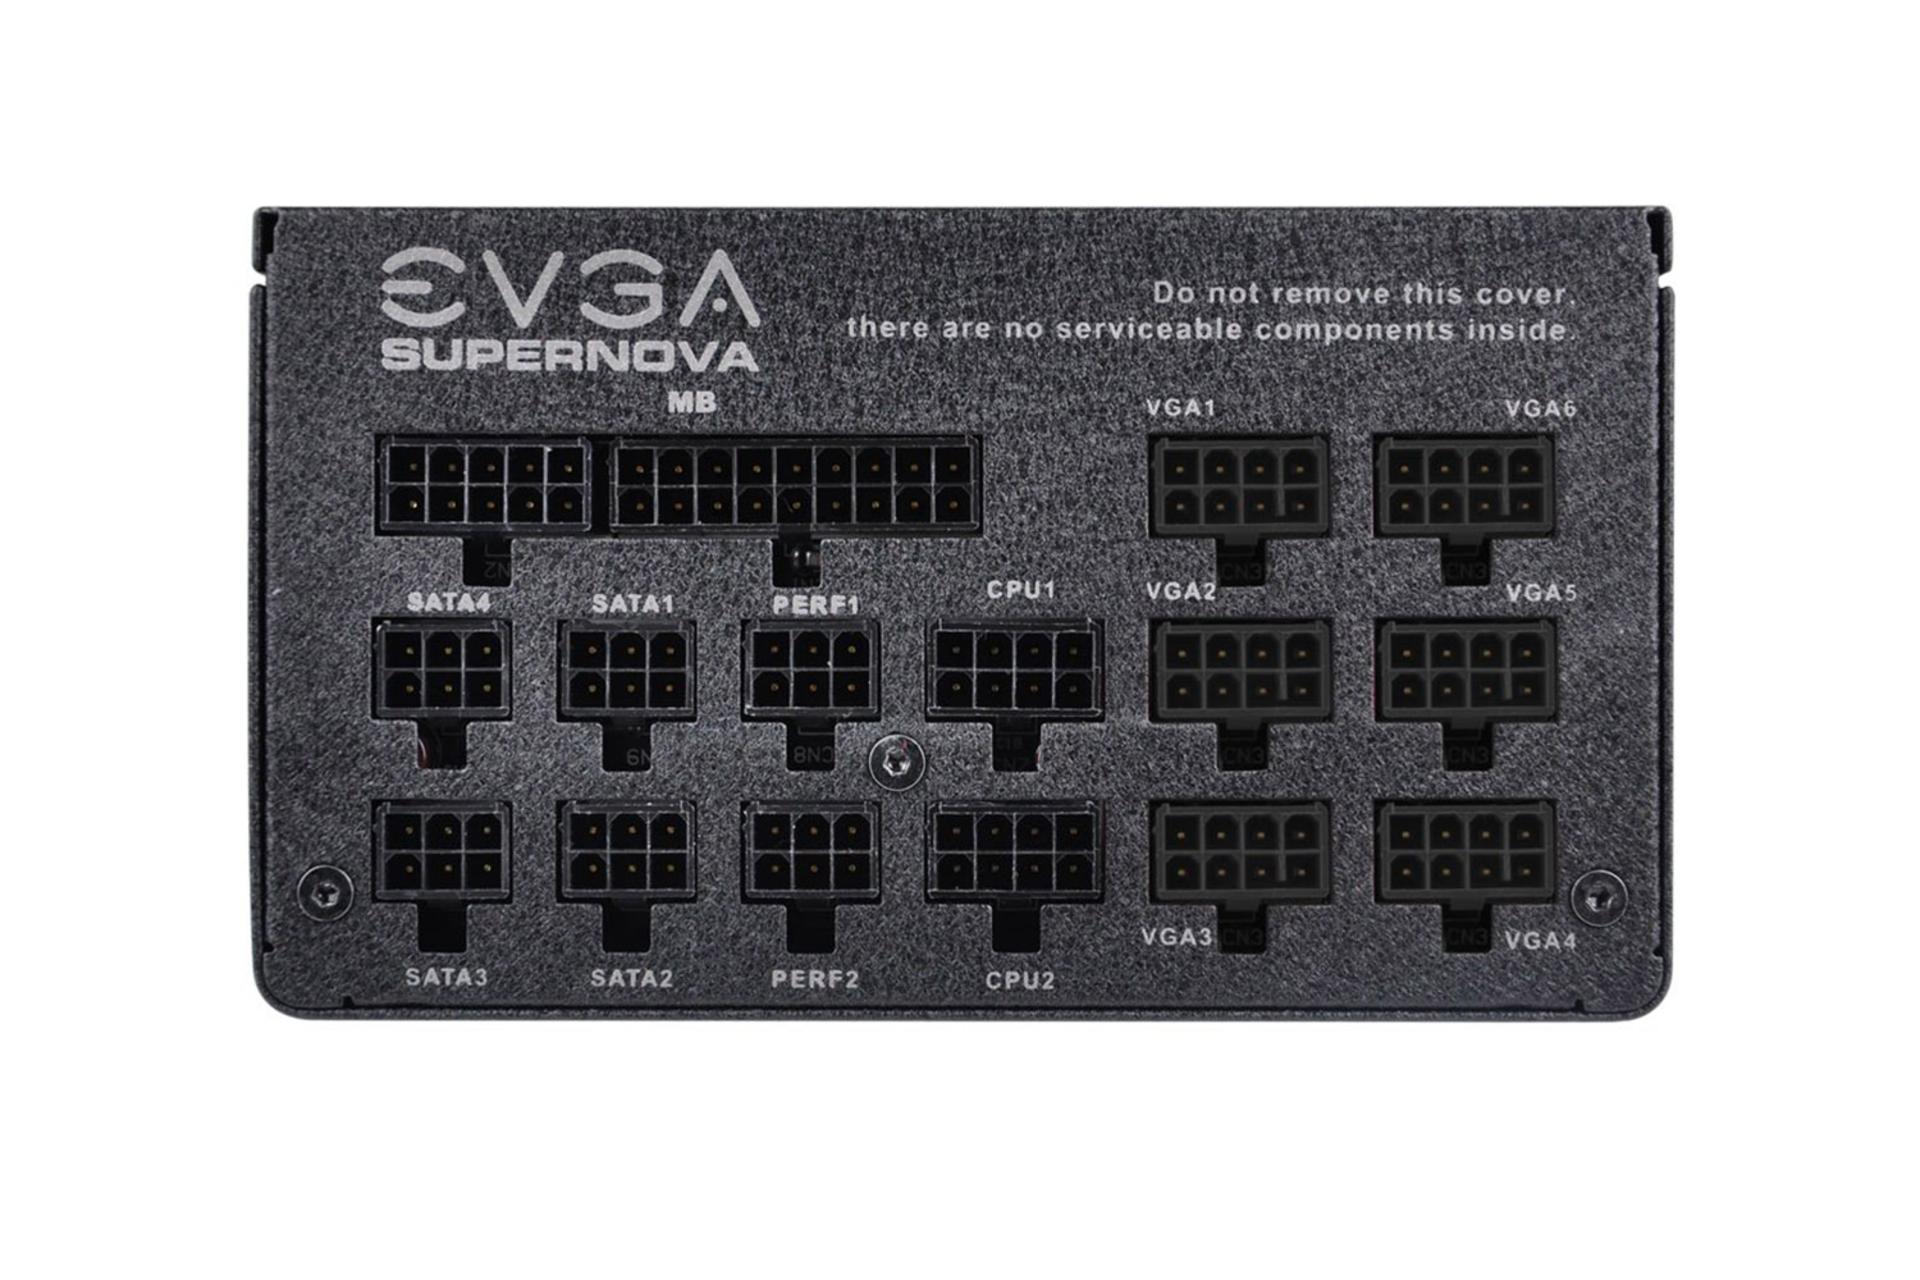 پاور کامپیوتر ای وی جی ای SuperNOVA 1300 G2 با توان 1300 وات اتصالات